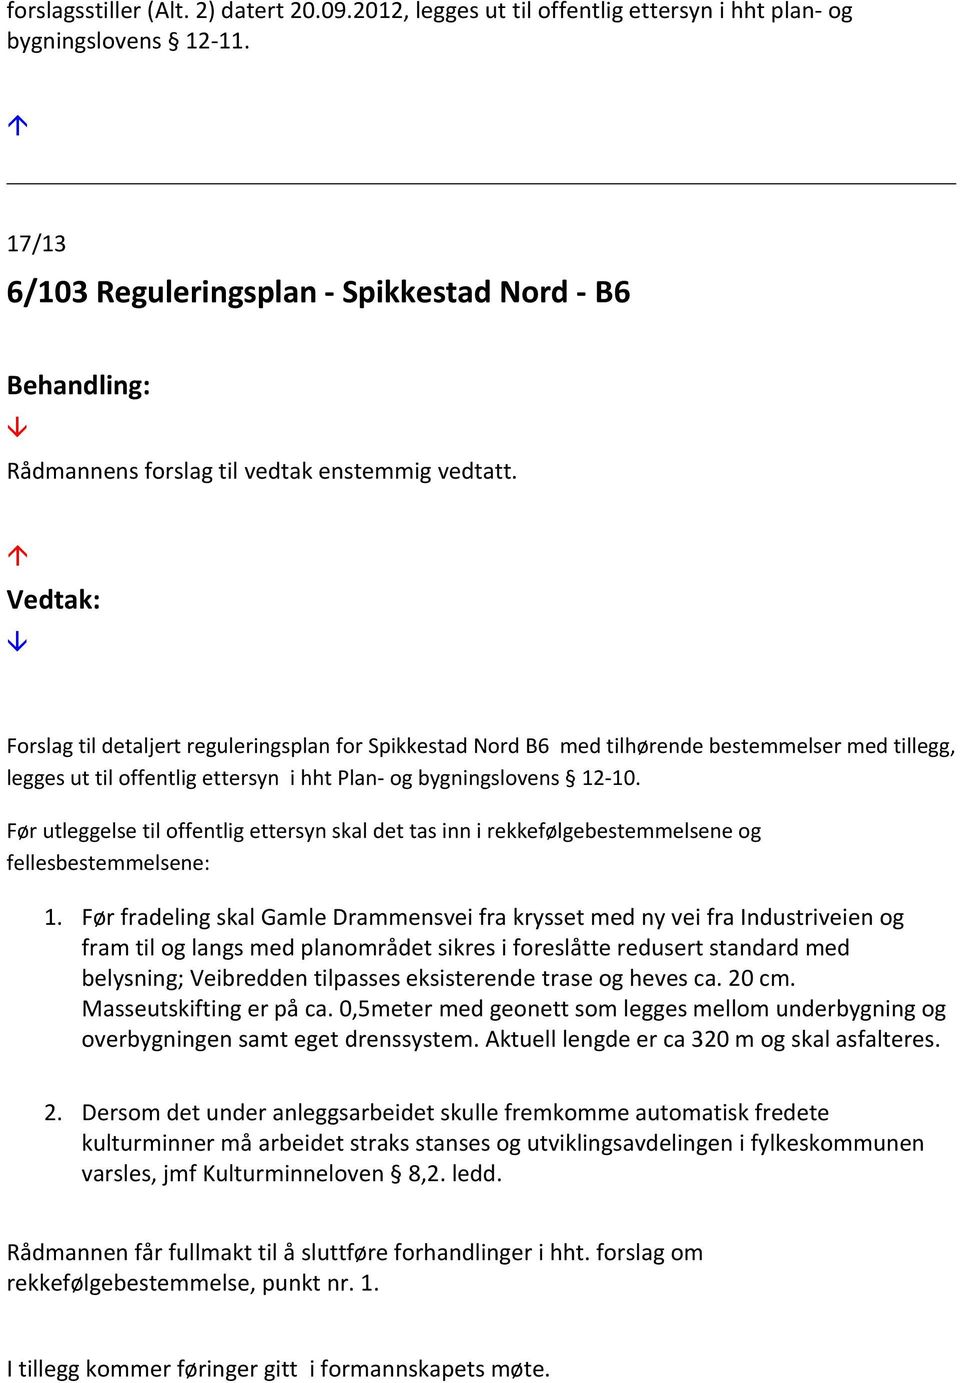 Forslag til detaljert reguleringsplan for Spikkestad Nord B6 med tilhørende bestemmelser med tillegg, legges ut til offentlig ettersyn i hht Plan- og bygningslovens 12-10.